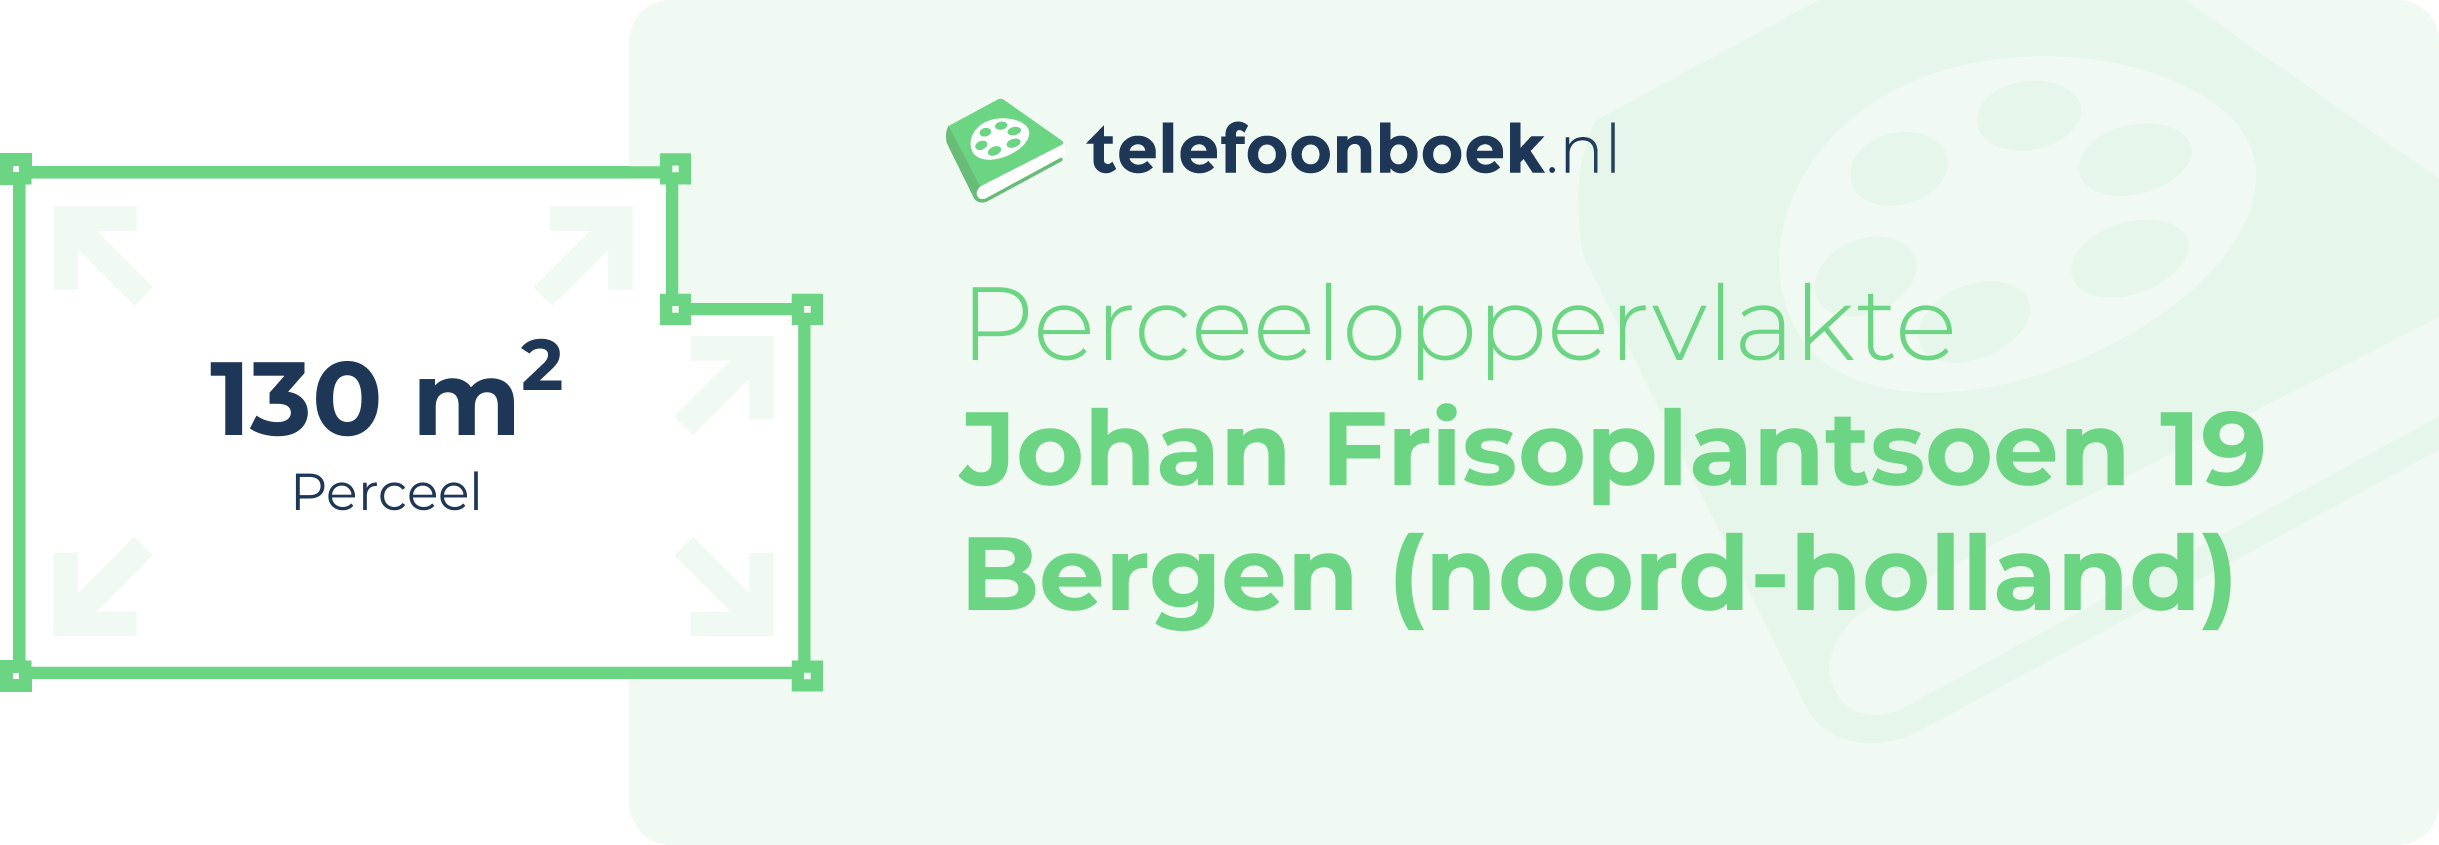 Perceeloppervlakte Johan Frisoplantsoen 19 Bergen (Noord-Holland)